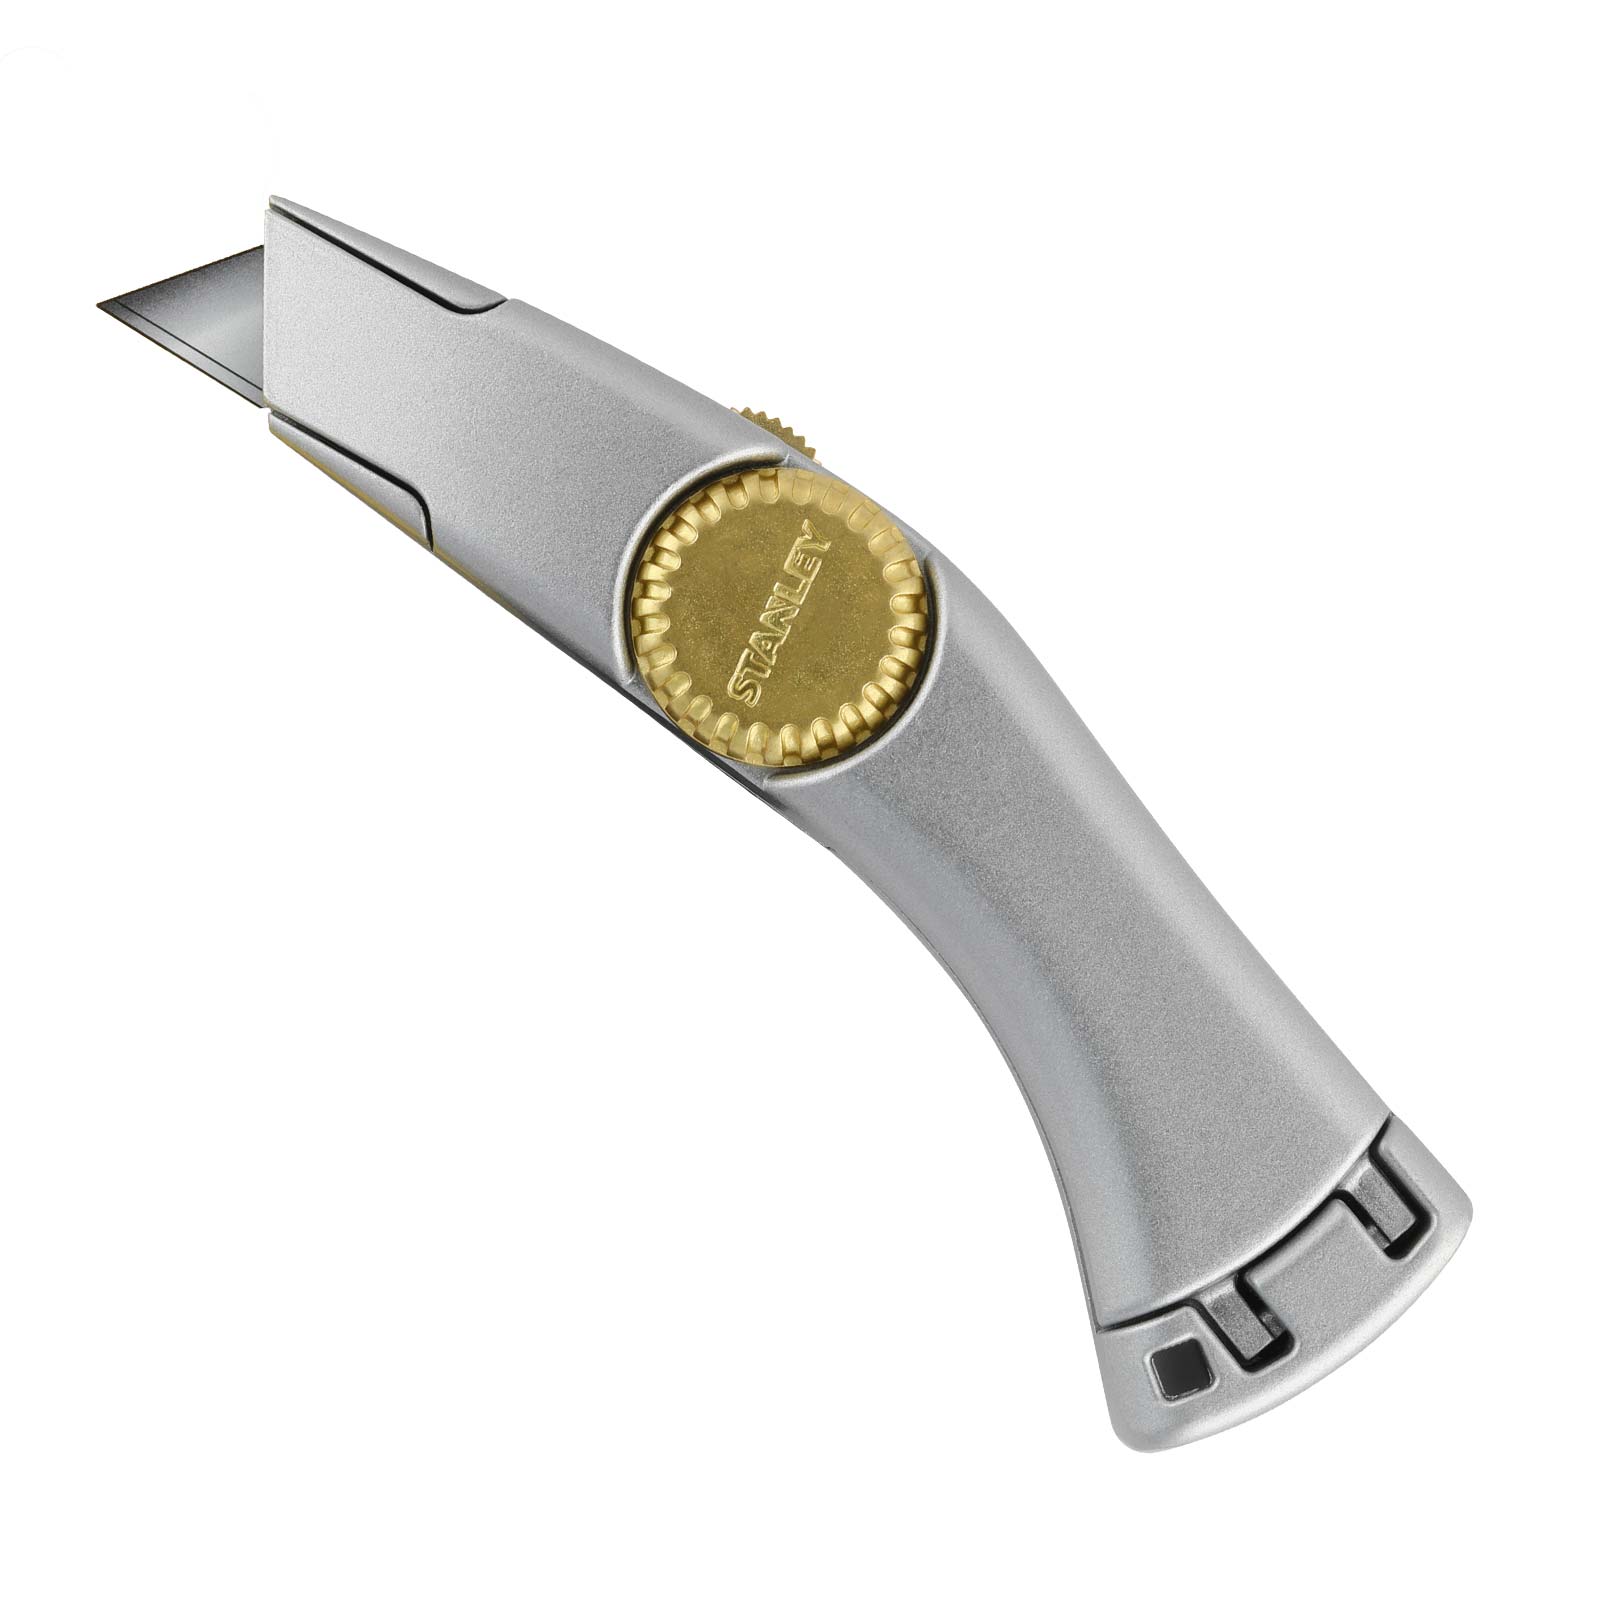 STANLEY Cuttermesser 2-10-122 185mm - Messer Titan, Teppichmesser, Paketmesser von STANLEY®